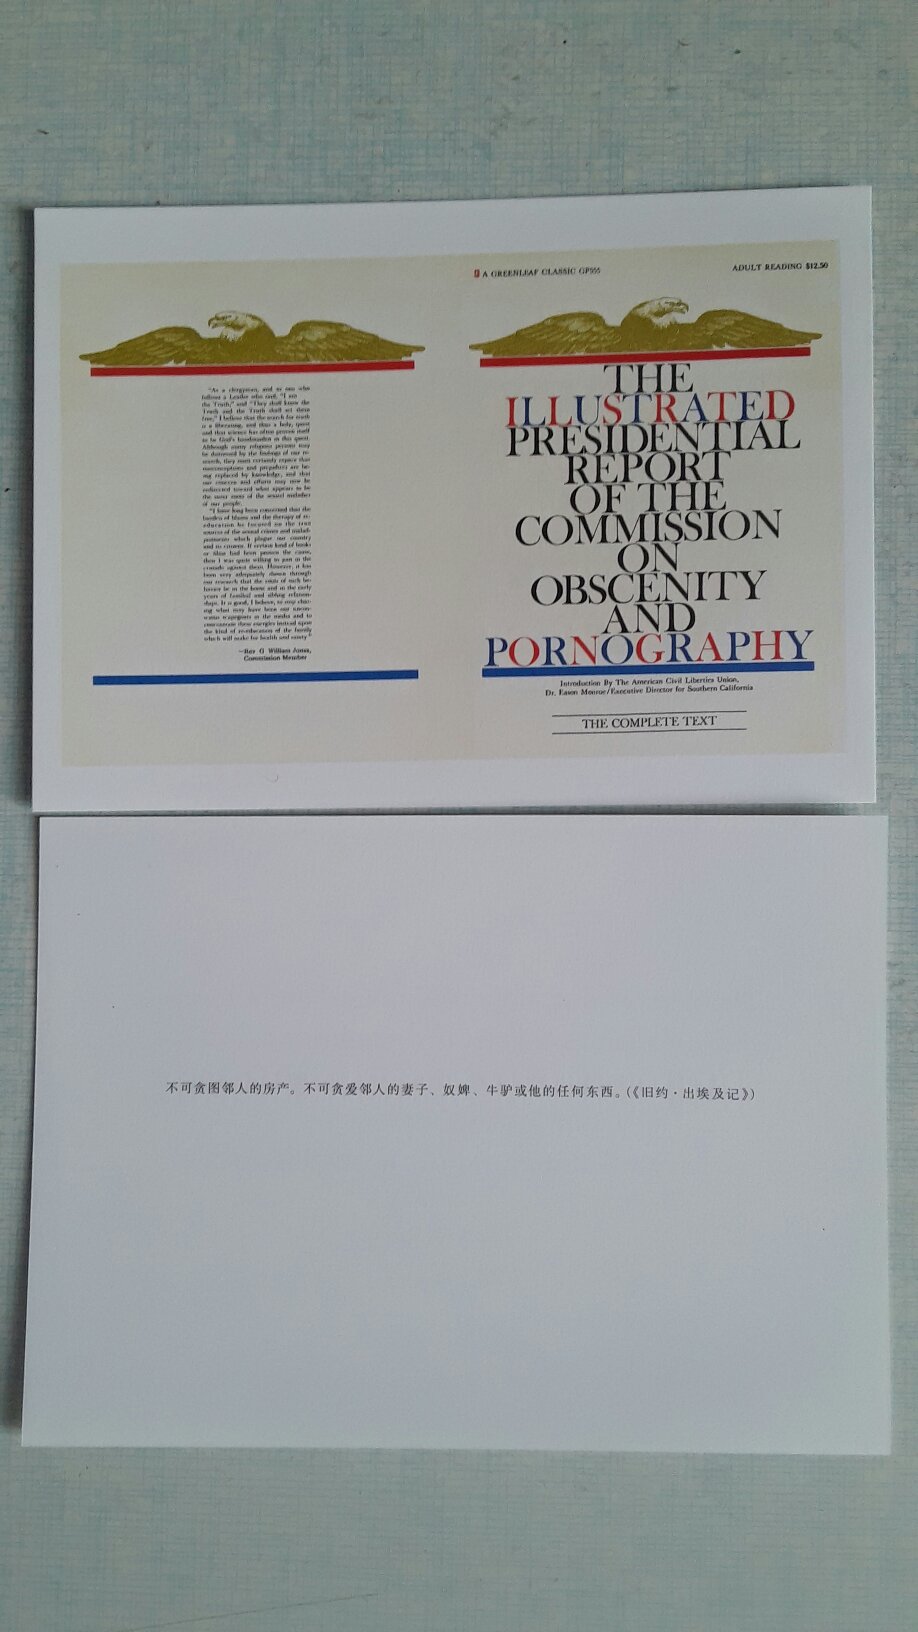 描写美国性产业的纪实作品，堪称一幅美国精神观念变革的风情画。书中附有两枚薄薄的明信片。